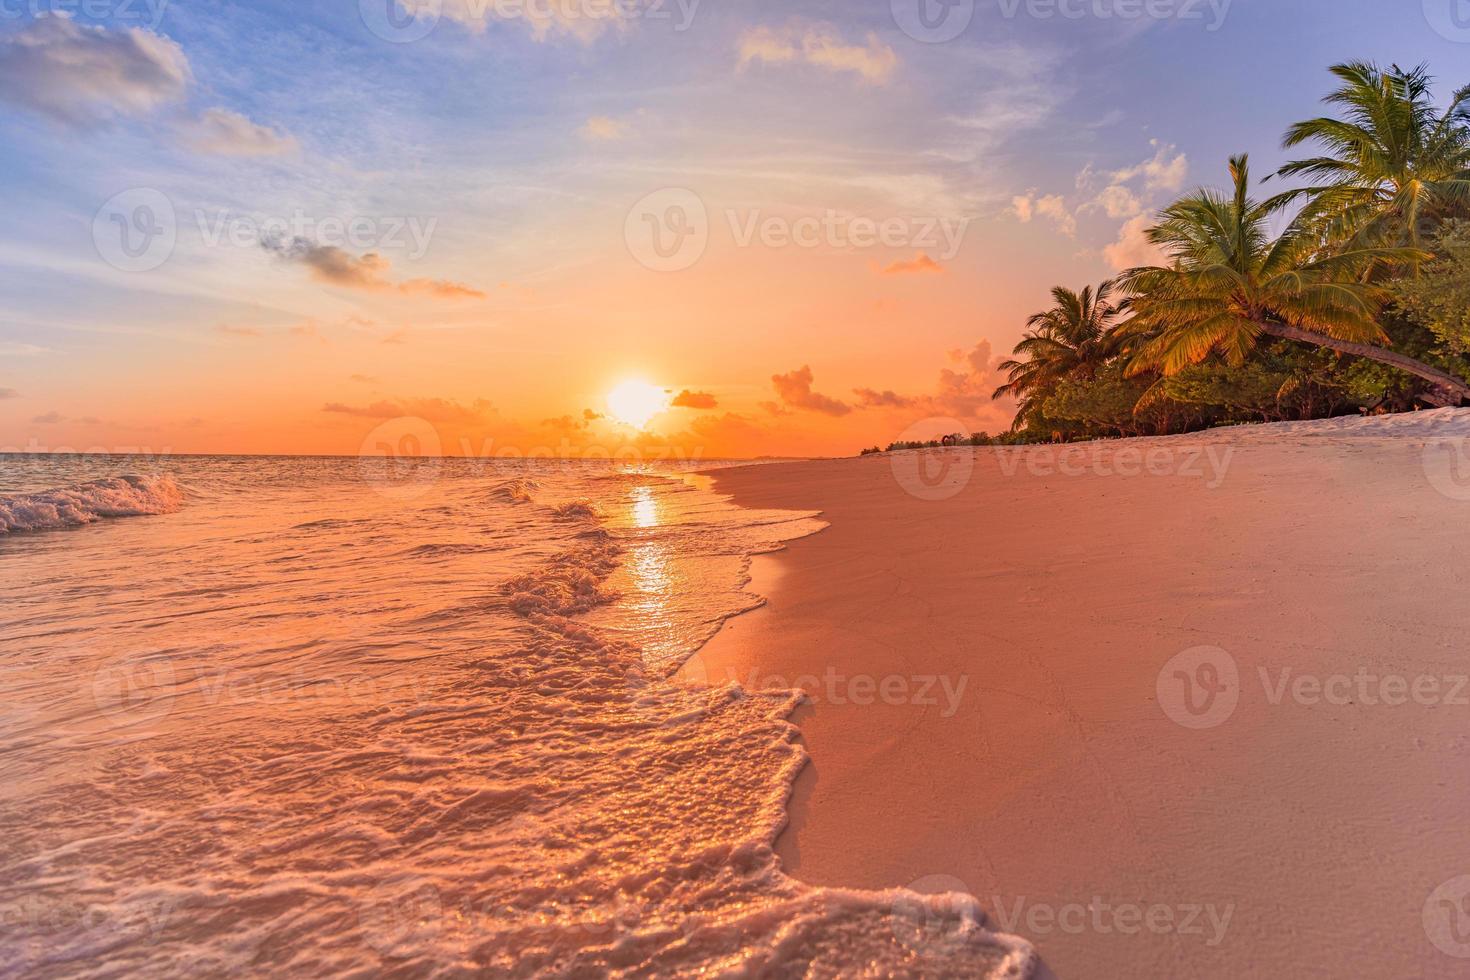 fantástica vista de primer plano de las tranquilas olas del mar con la luz del sol naranja del amanecer. paisaje de playa de isla tropical, costa exótica. vacaciones de verano, vacaciones naturaleza increíble escénica. relajarse paraíso foto